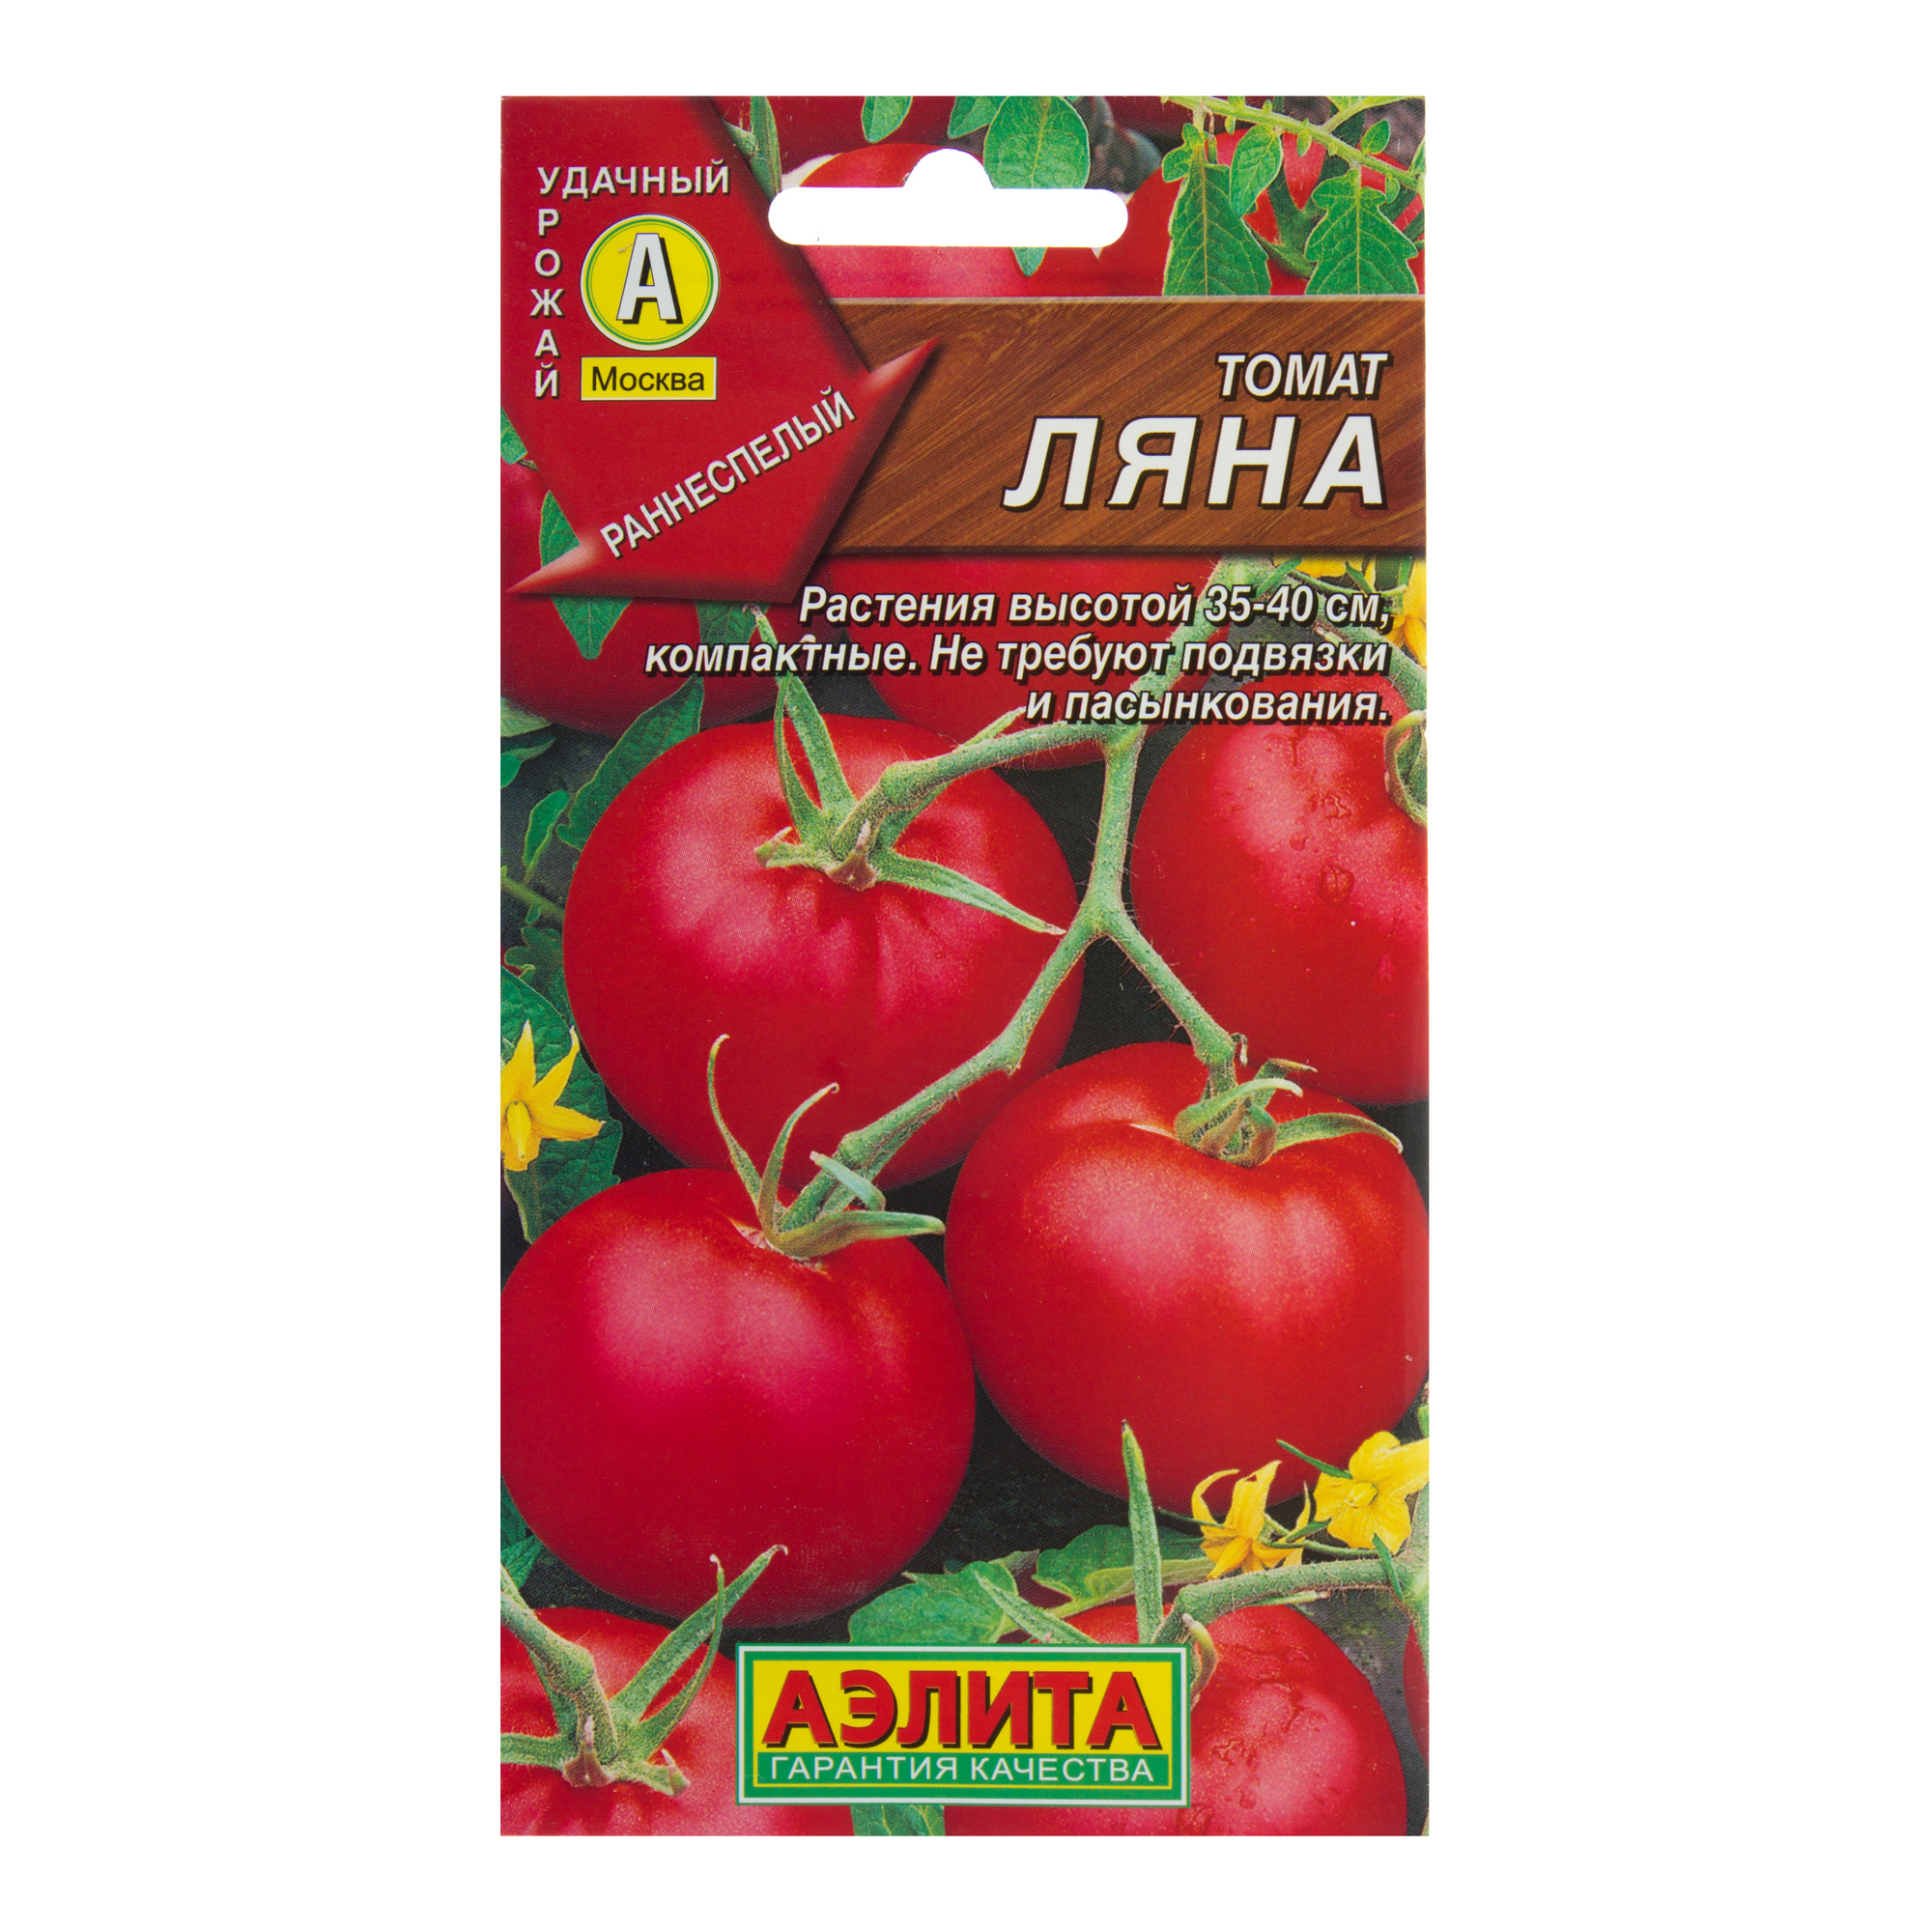 Семена Томат «Ляна» по цене 25 ₽/шт. купить в Москве в интернет-магазинеЛеруа Мерлен